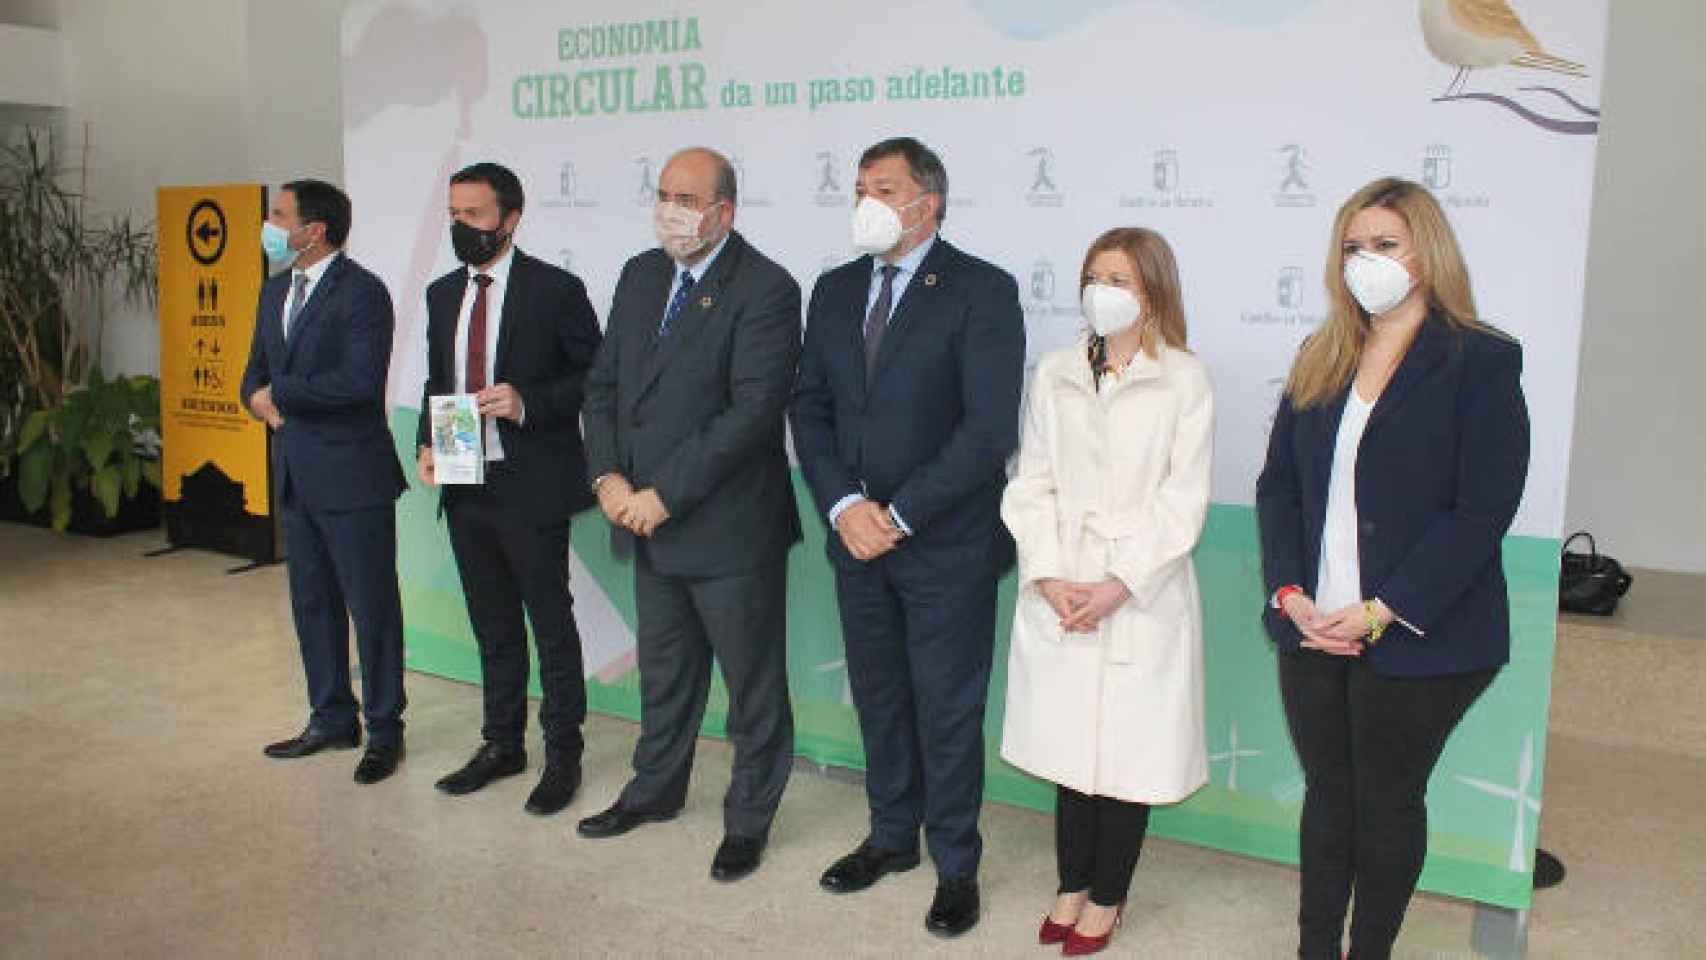 El Gobierno regional presentó la Estrategia de Economía circular el pasado día 4 en Cuenca